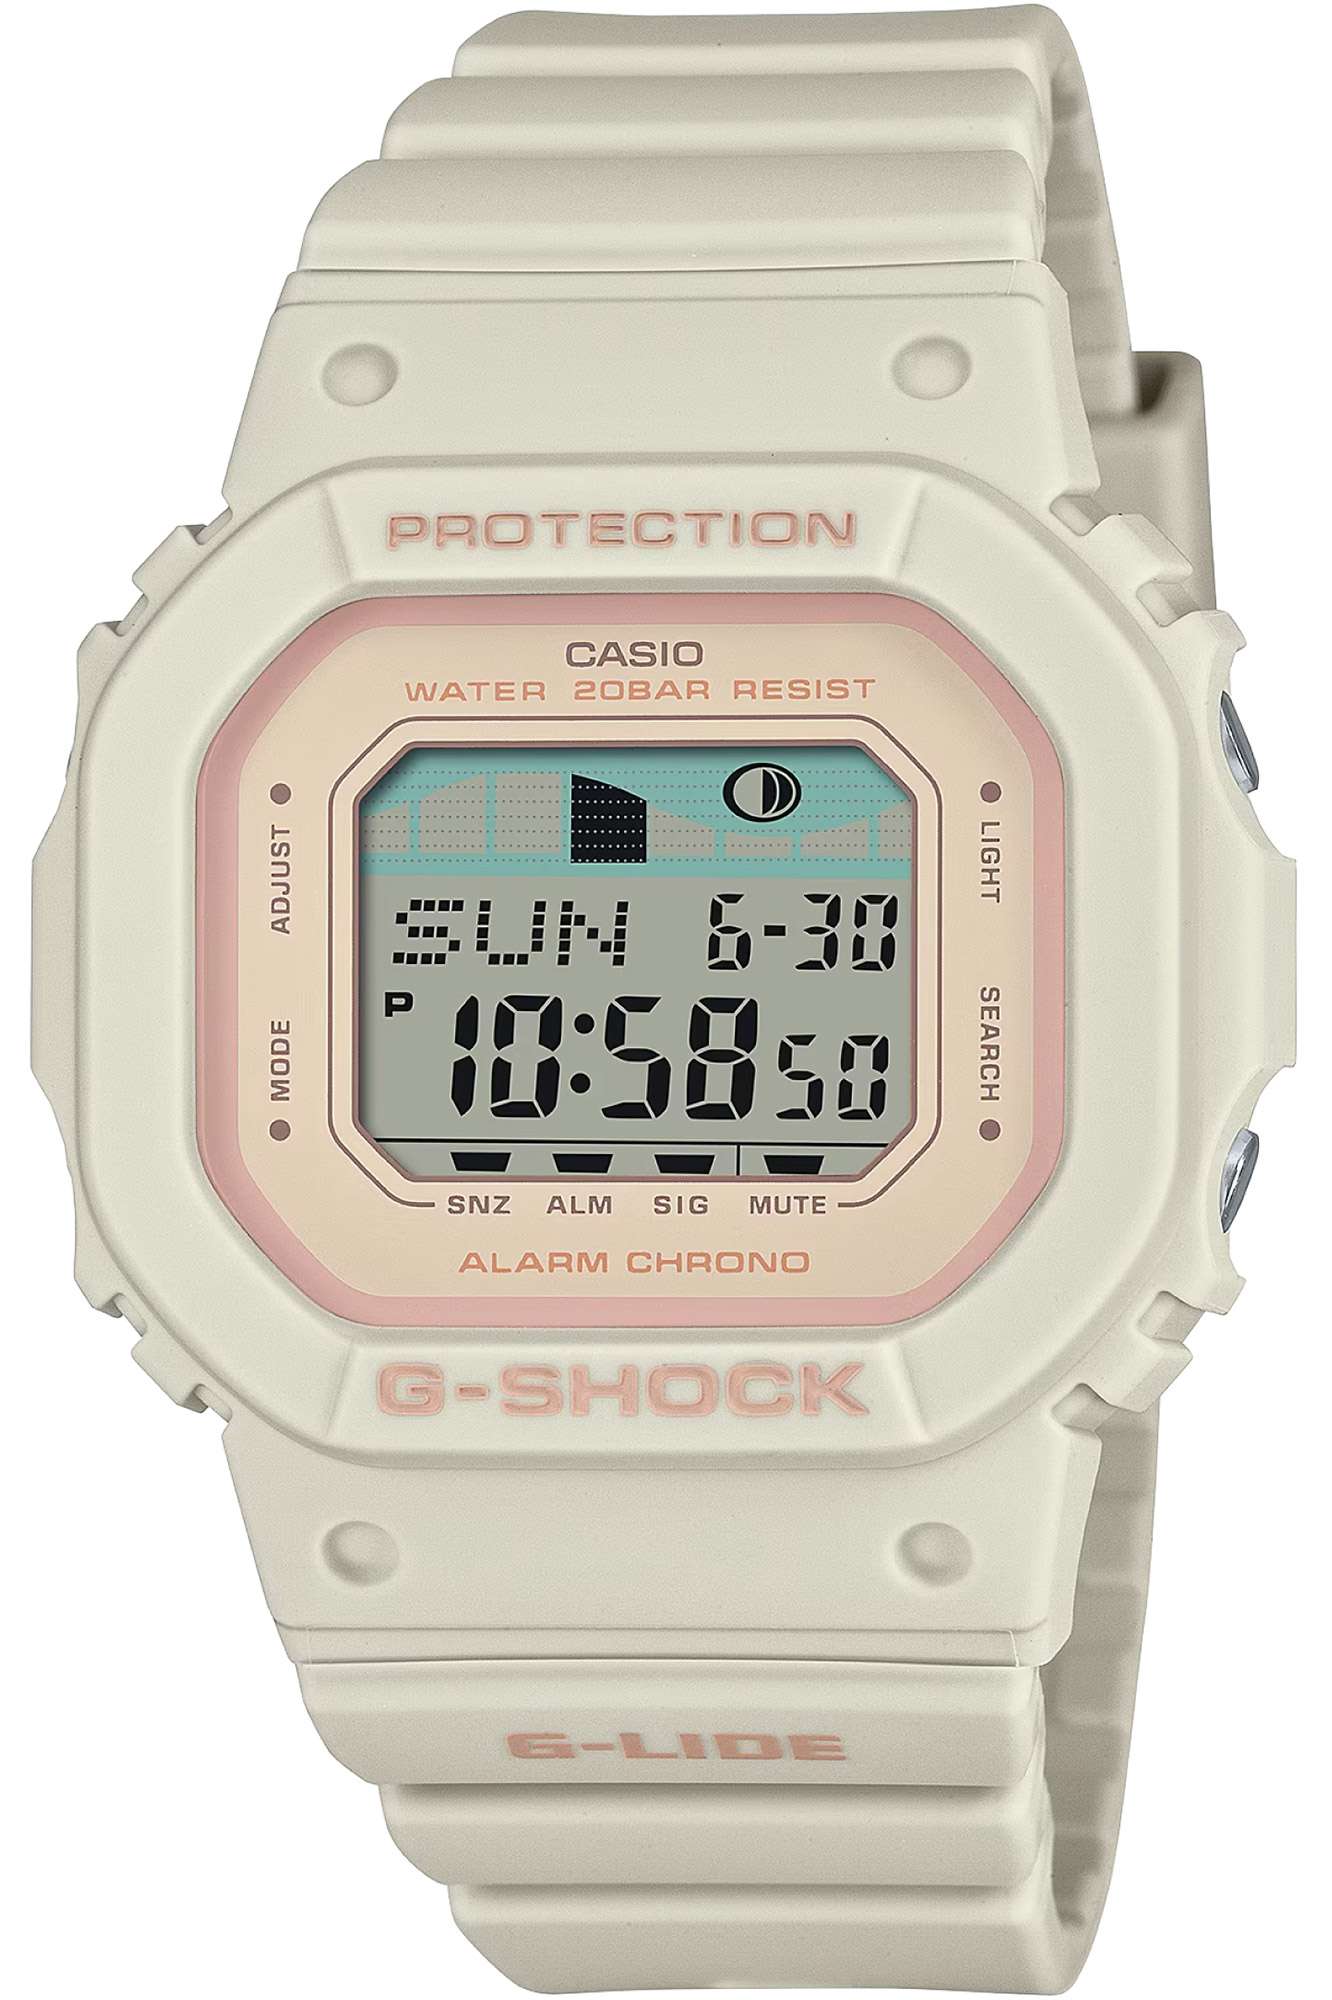 Watch CASIO G-Shock glx-s5600-7er